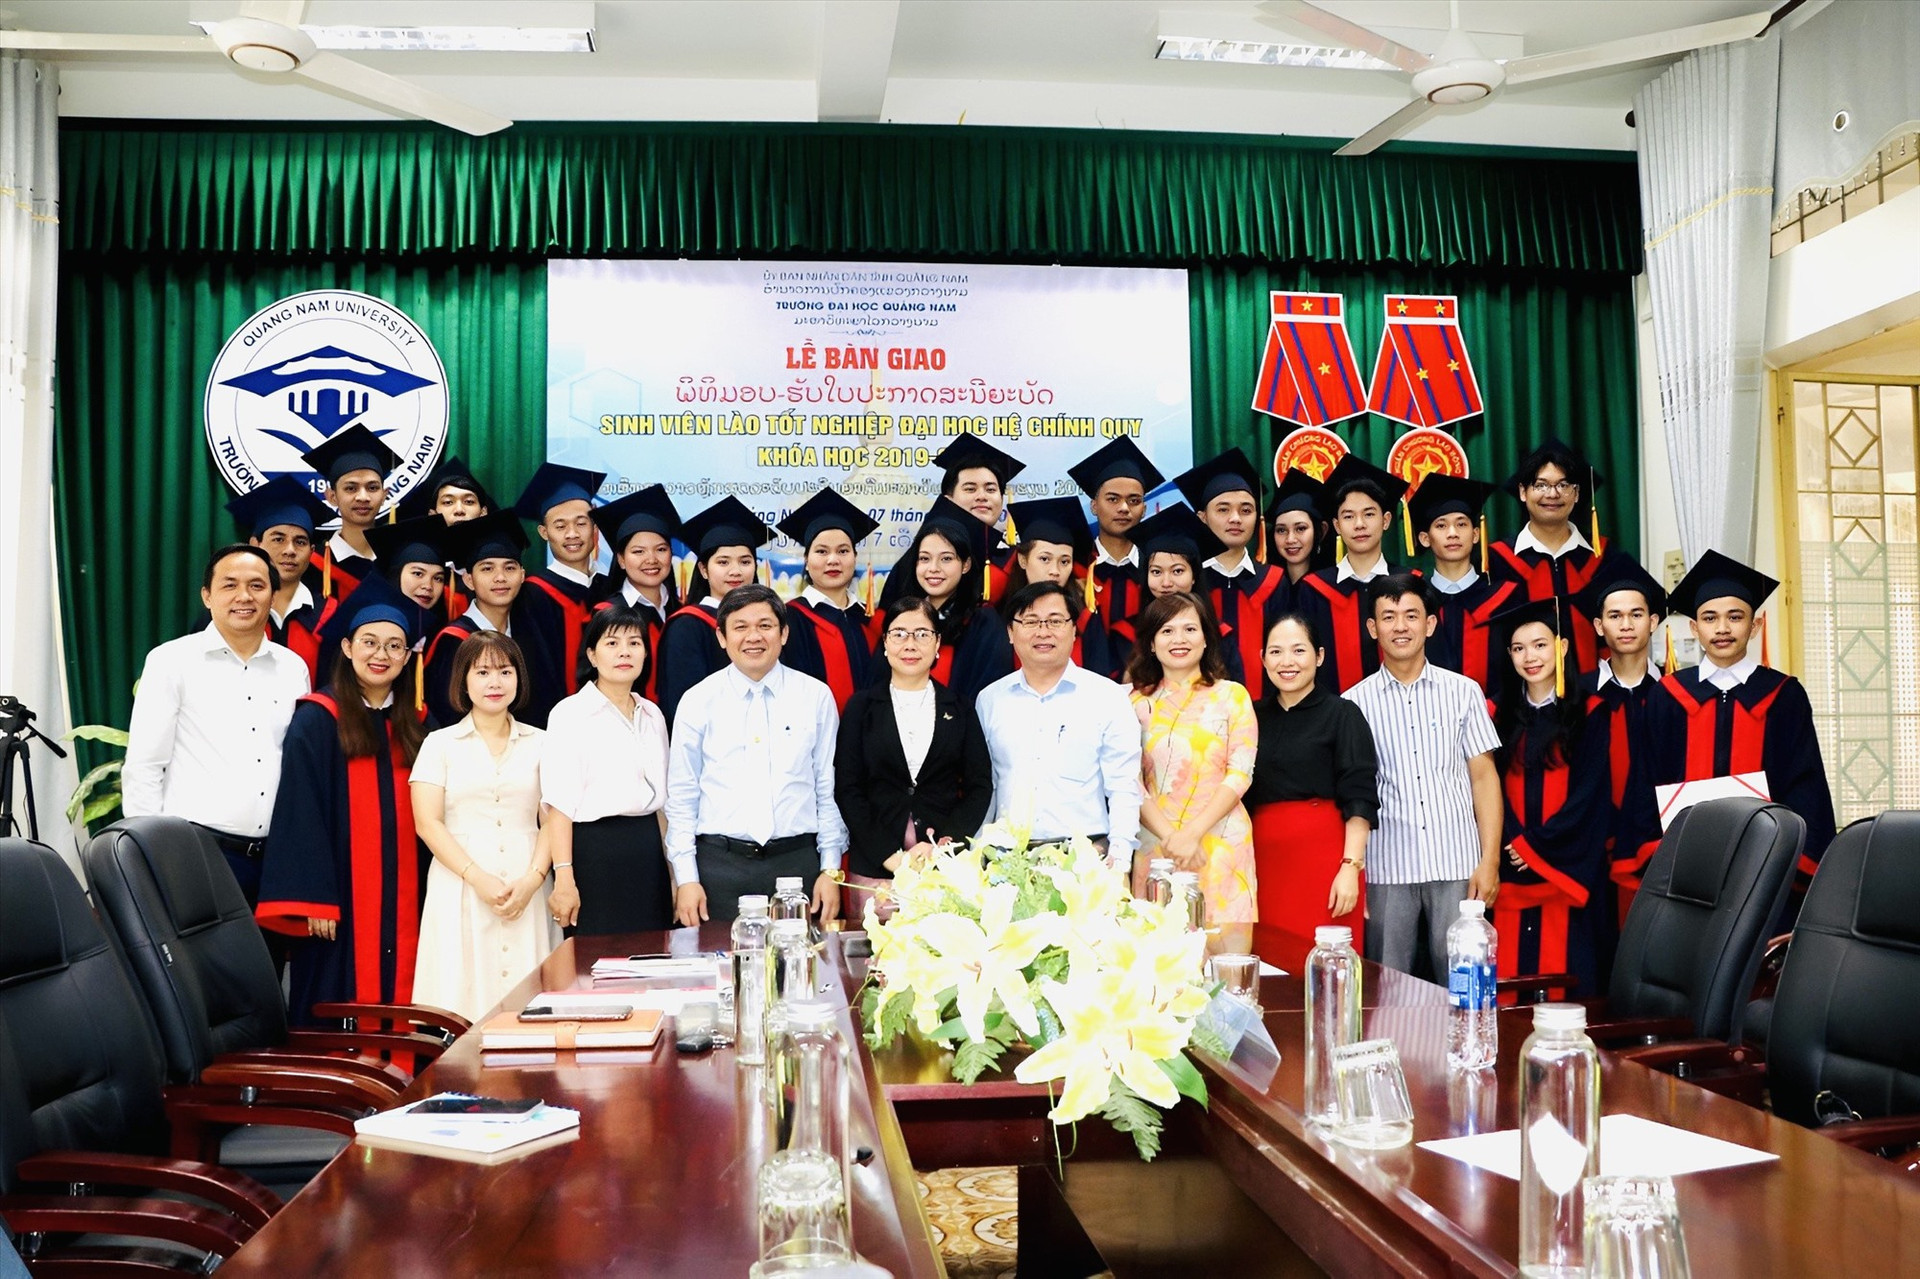 Trường Đại học Quảng Nam bàn giao sinh viên Lào tốt nghiệp đại học hệ chính quy cho UBND tỉnh Quảng Nam.